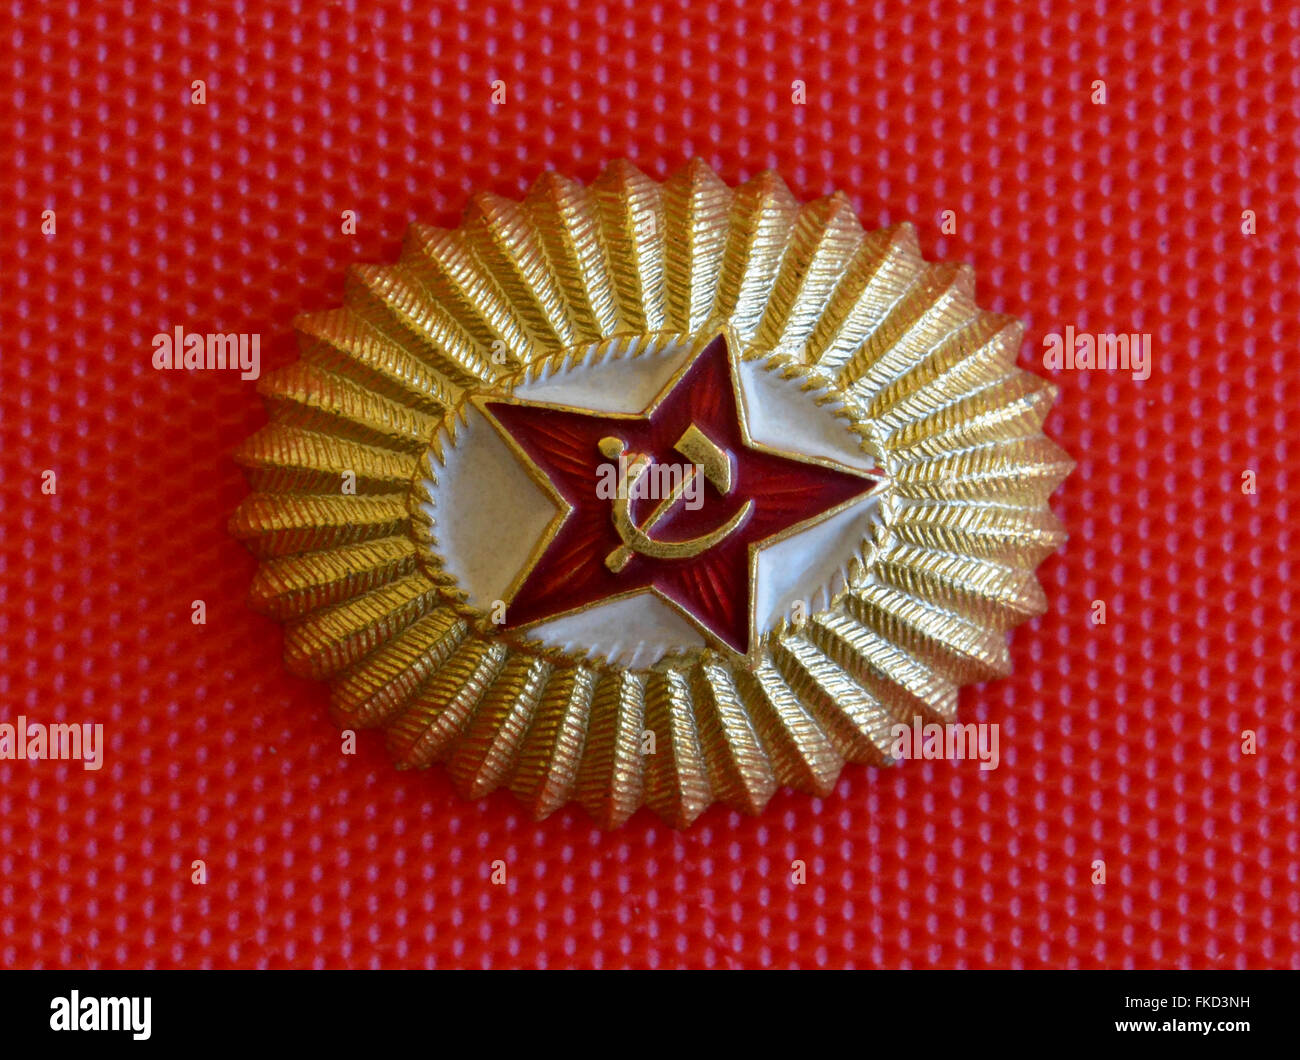 Un badge popolare dell'Unione Sovietica mostra una stella rossa con la falce e il martello, un simbolo comunista creato per la rivoluzione russa del 1917. Essa è stata data al visitatore americano in URSS (Unione delle Repubbliche socialiste sovietiche) nel 1962 durante la Guerra Fredda. Questo ovale in metallo leggero misure emblema 1-3/16 pollici nella dimensione corta da 1-7/16 pollici nella dimensione lunga. Foto Stock